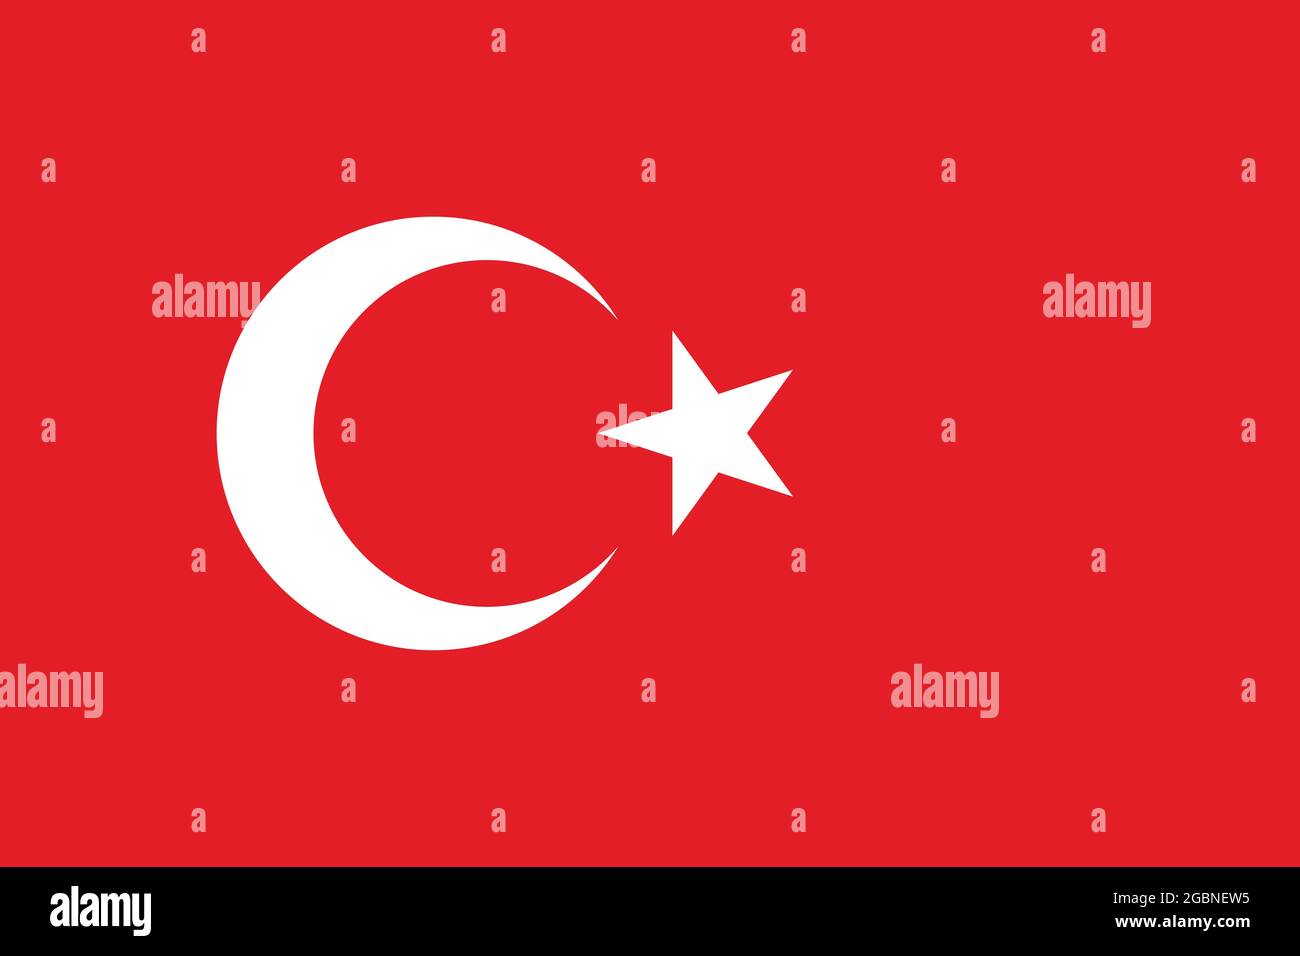 Bandiera nazionale della Turchia originale dimensione e colori illustrazione vettoriale, bandiere turche con stella e mezzaluna, al bayrak o come al sanak in turco Illustrazione Vettoriale